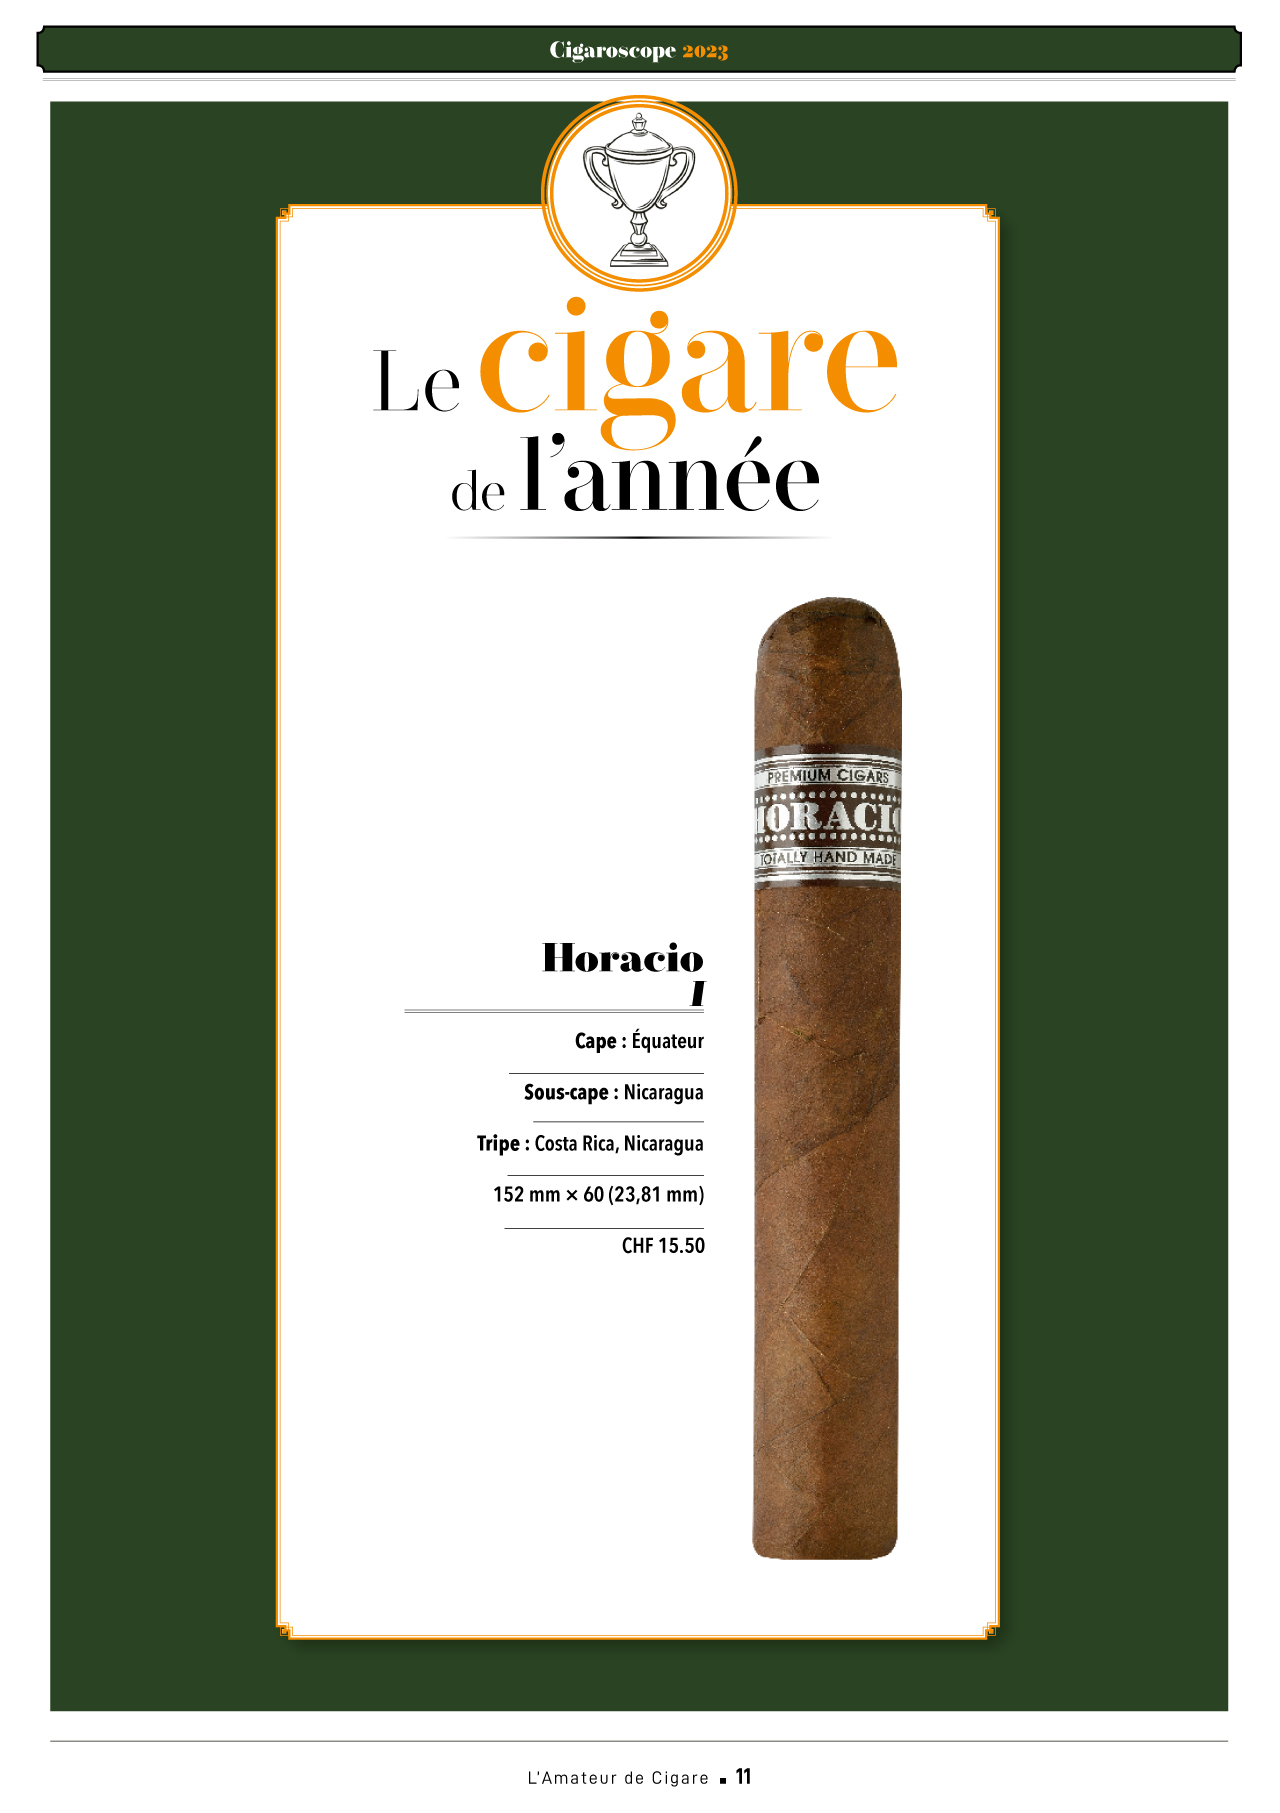 L'Amateur de cigares - Horacio 1, élu Cigare de l’année 2023 par le Cigaroscope - Hors série N°160